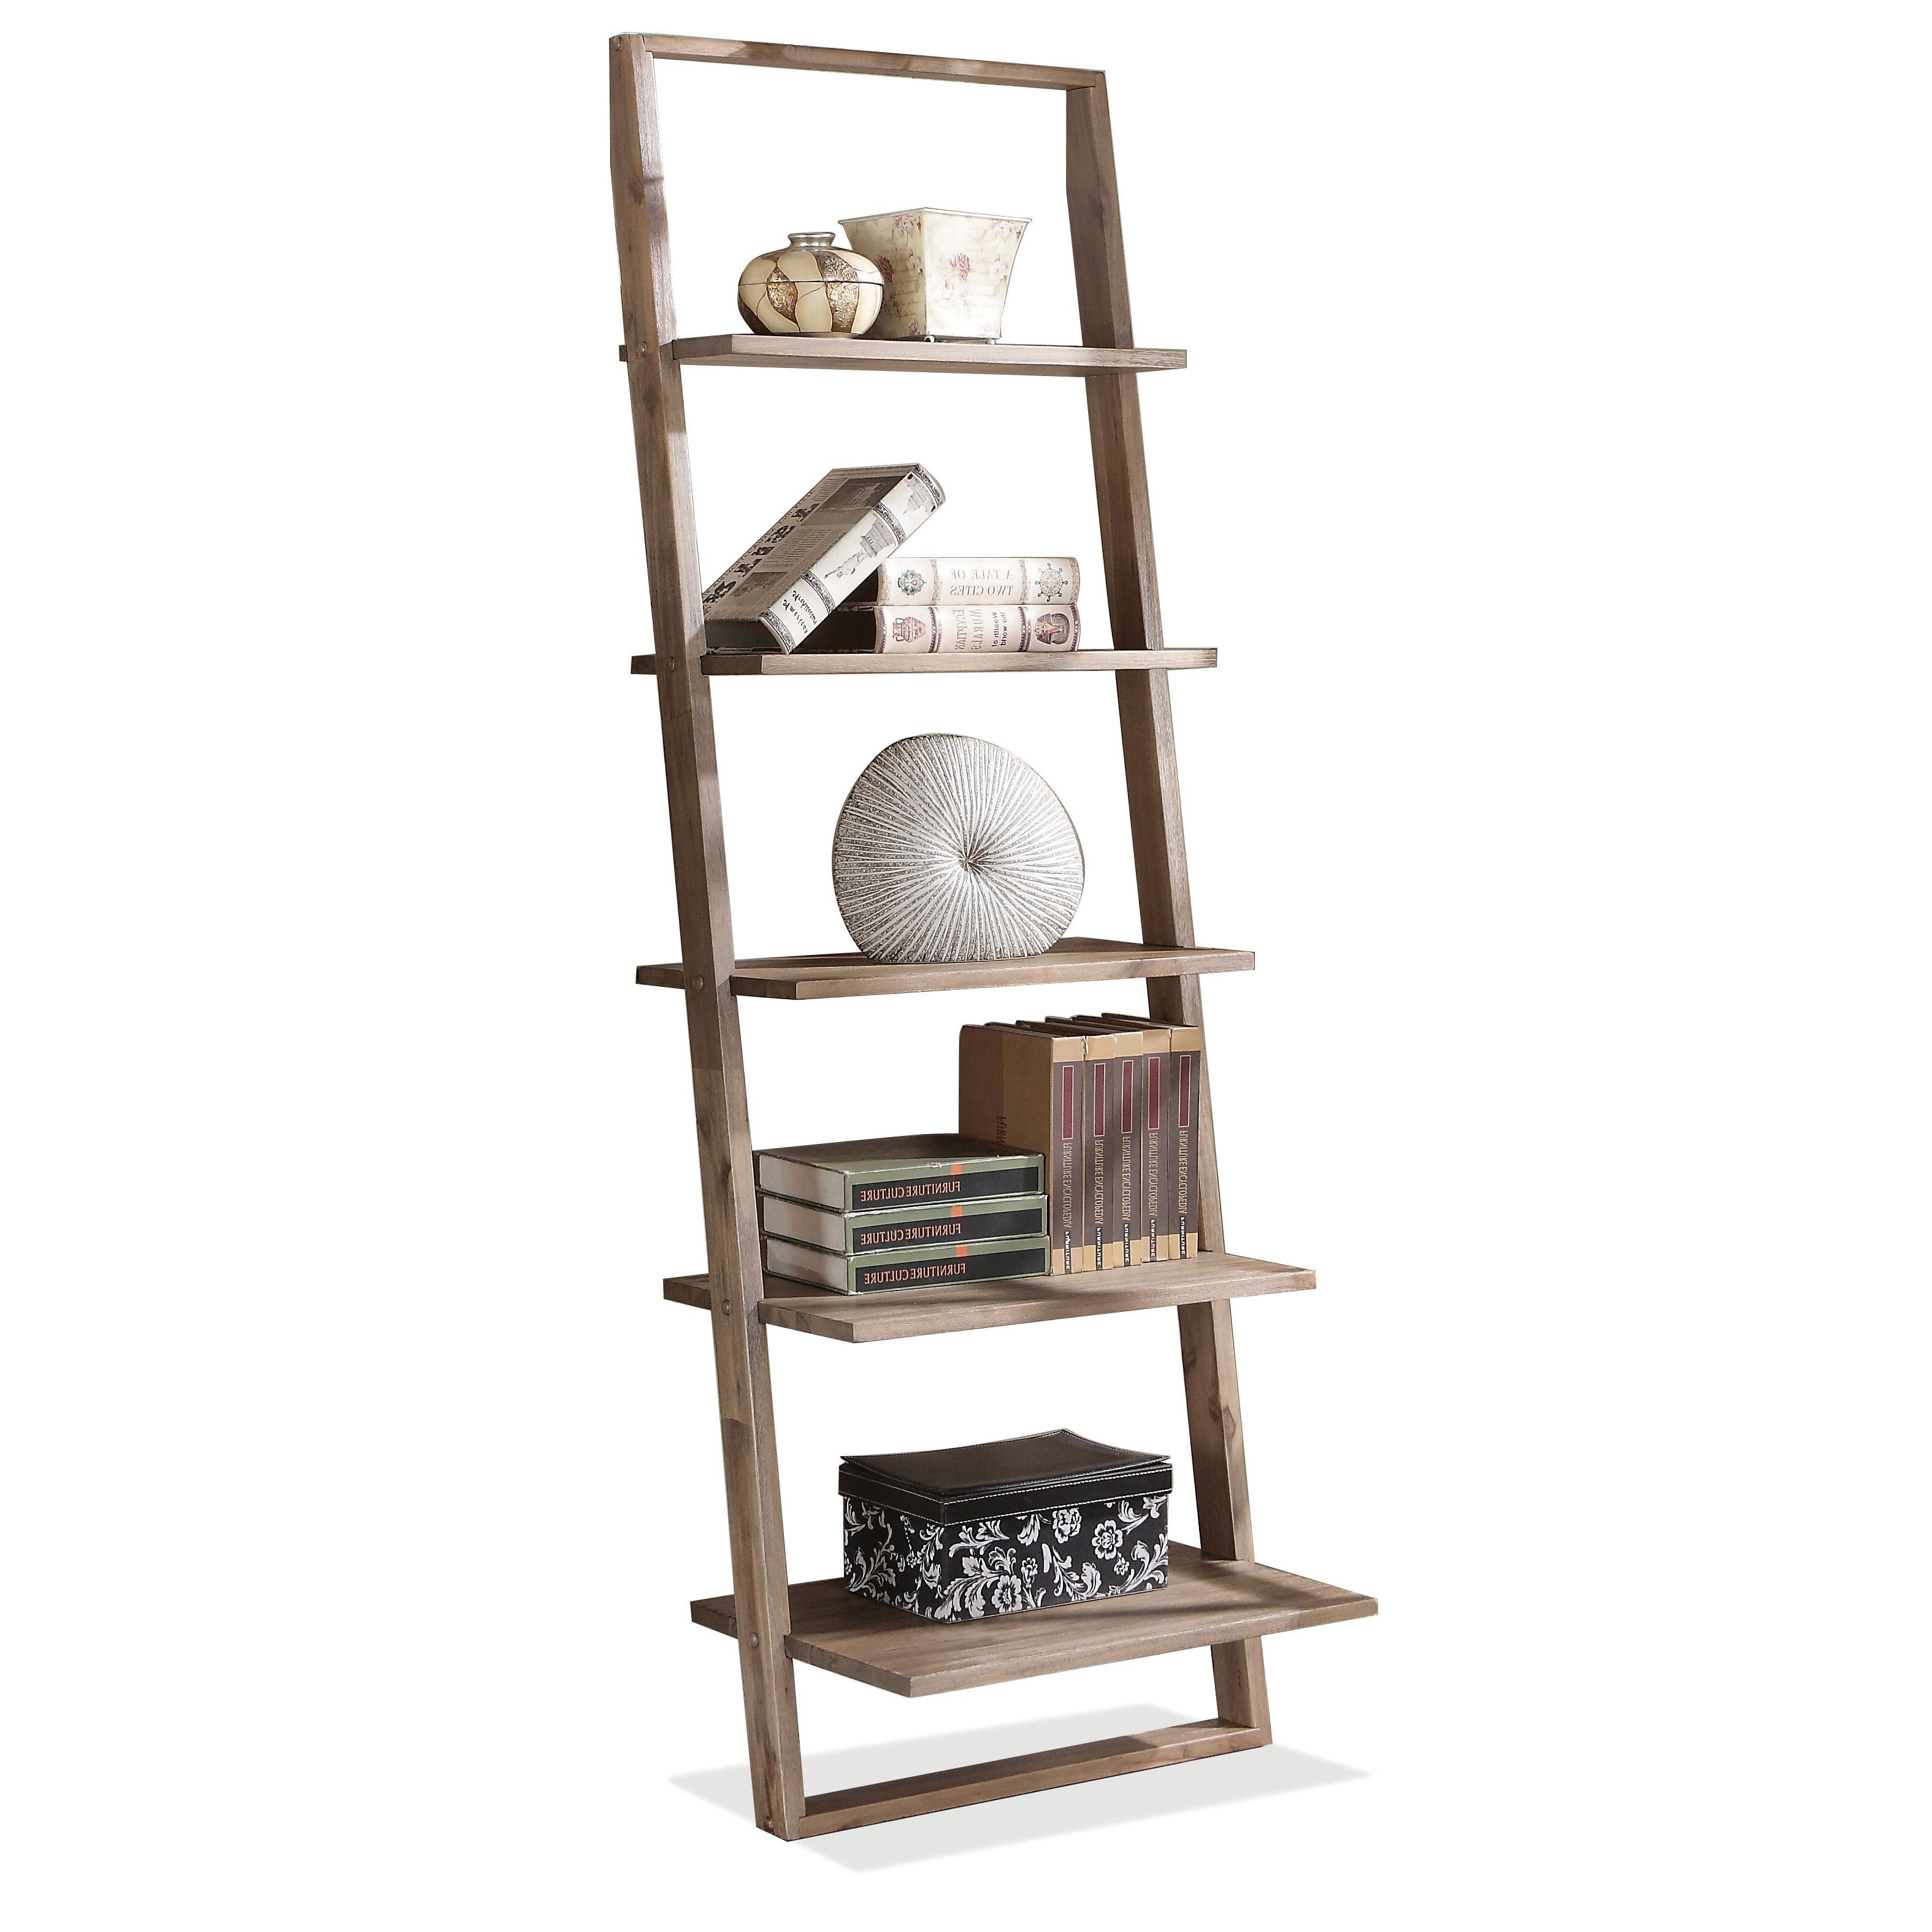 Noelle Ashlynn Ladder Bookcases For Popular Noelle Ashlynn Ladder Bookcase & Reviews (View 1 of 20)